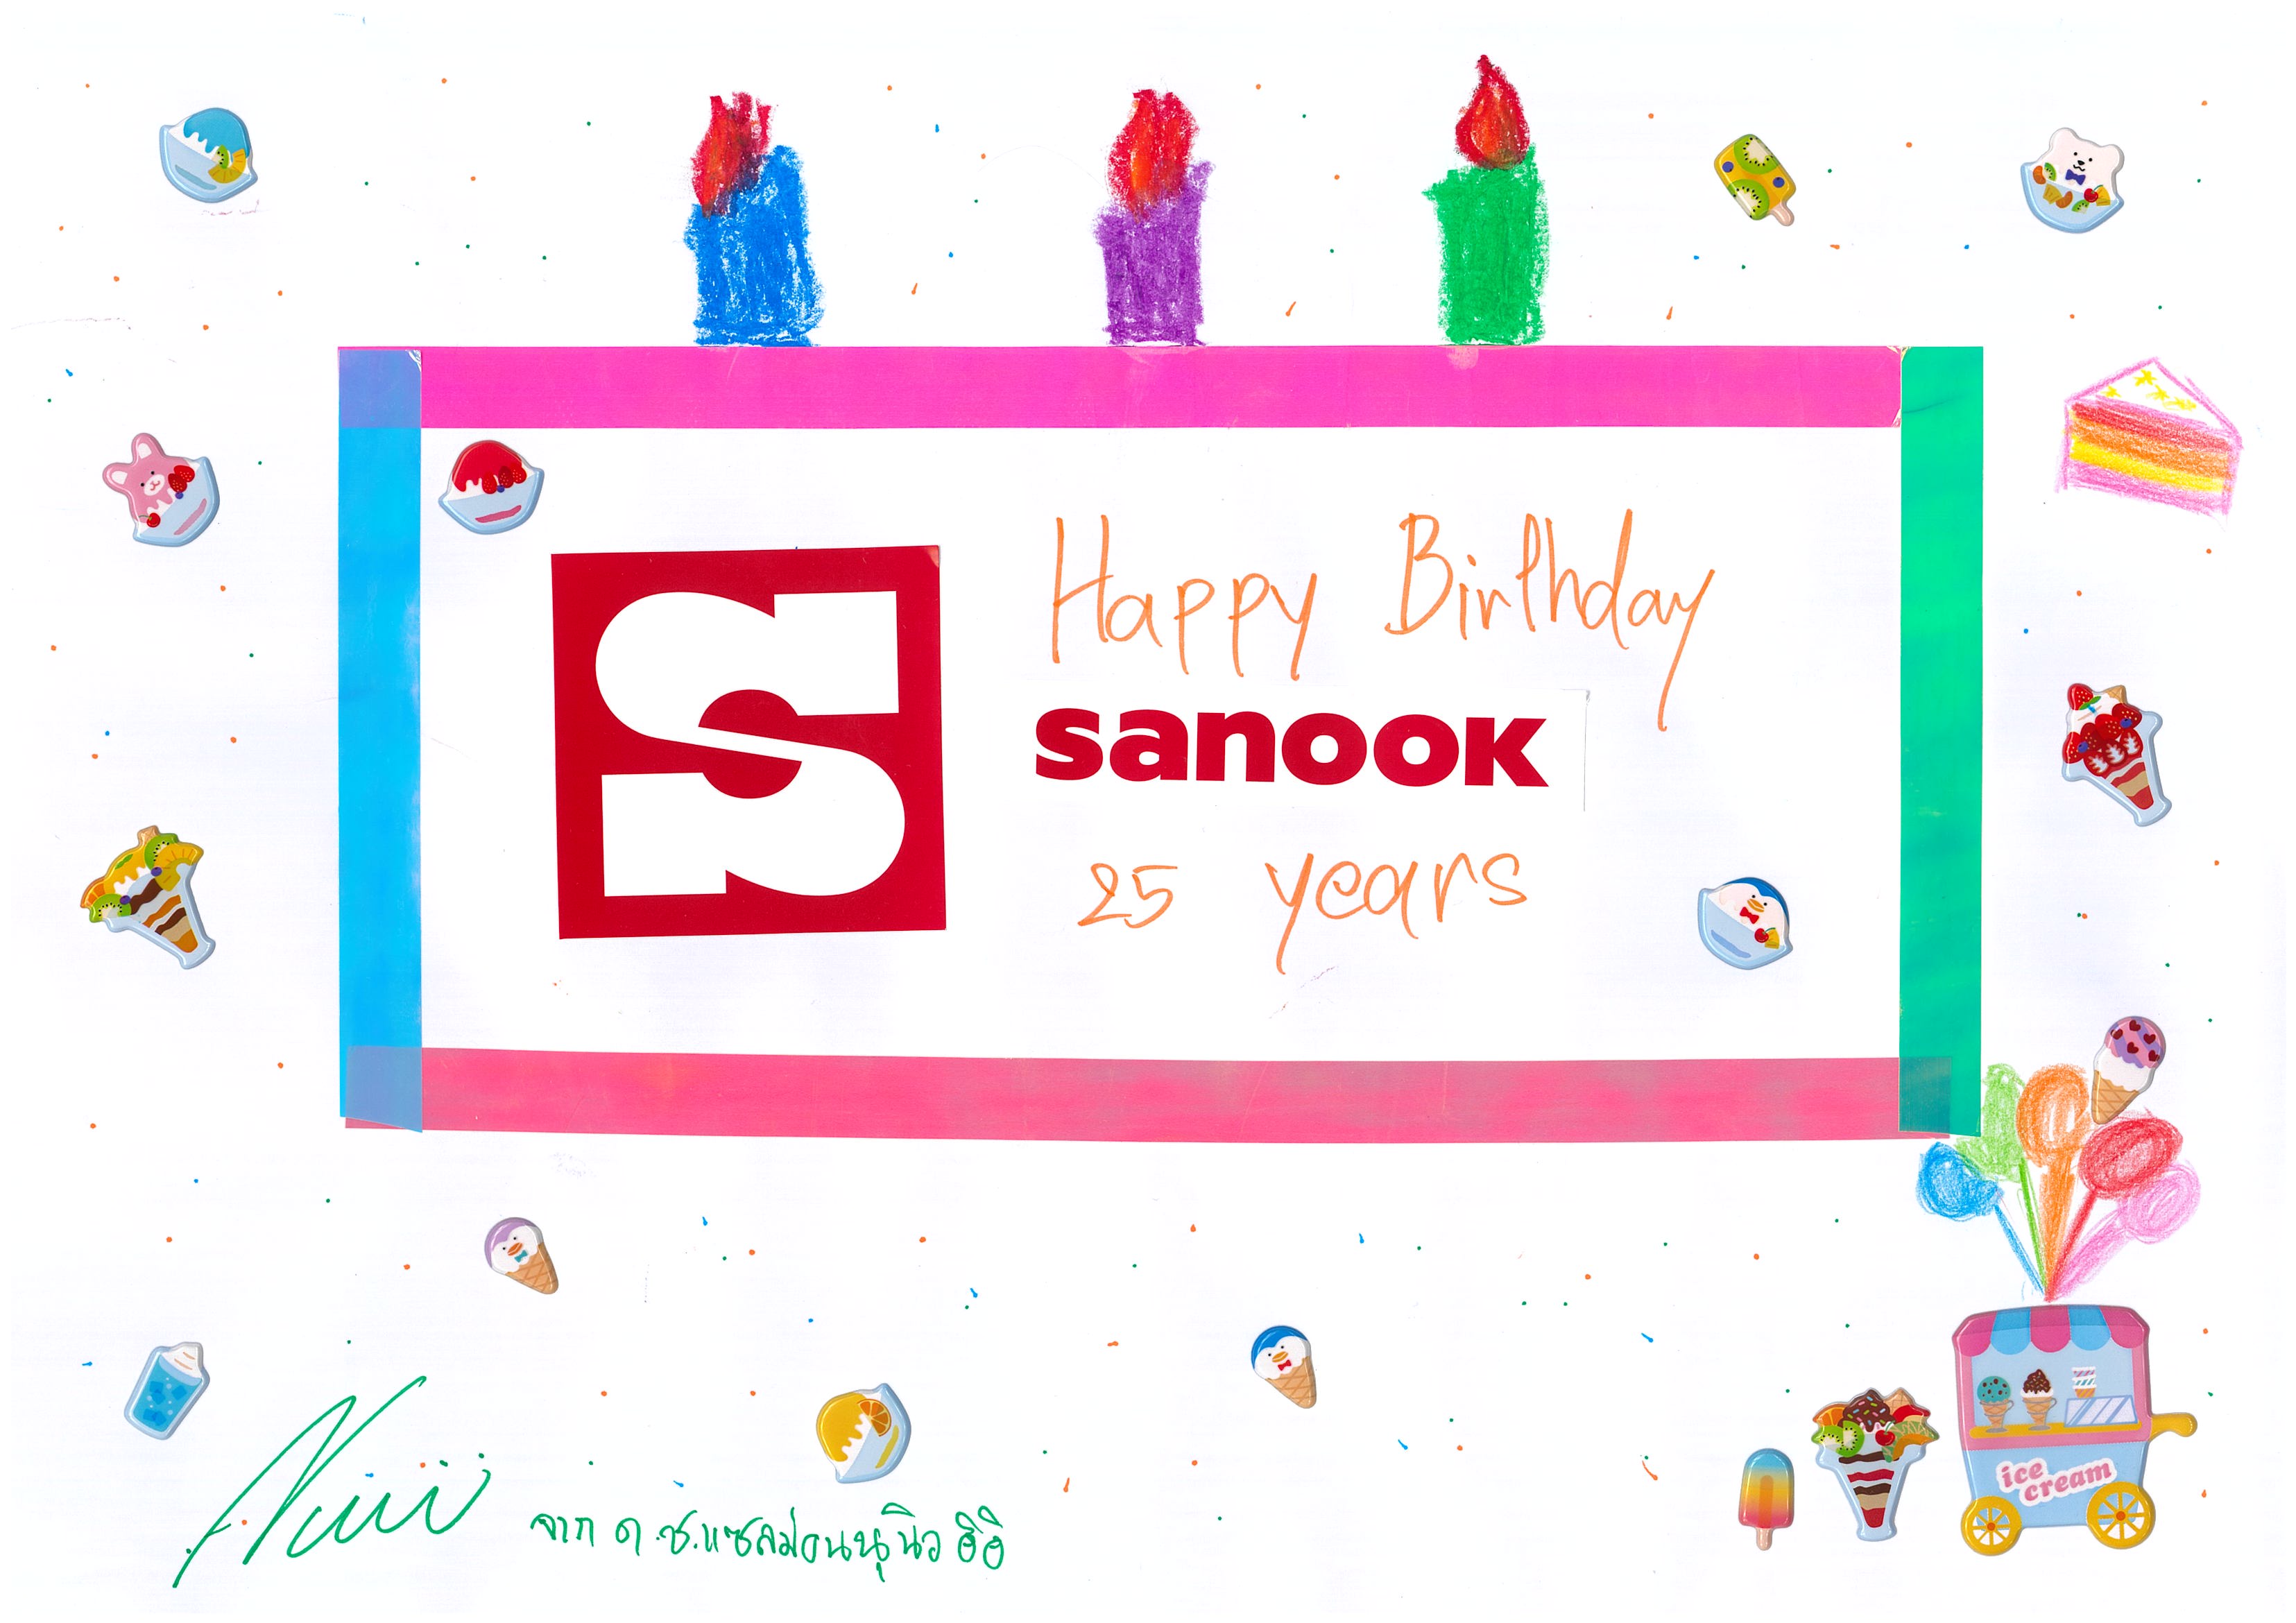 นุนิว การ์ดครบรอบ 25 ปี Sanook.com